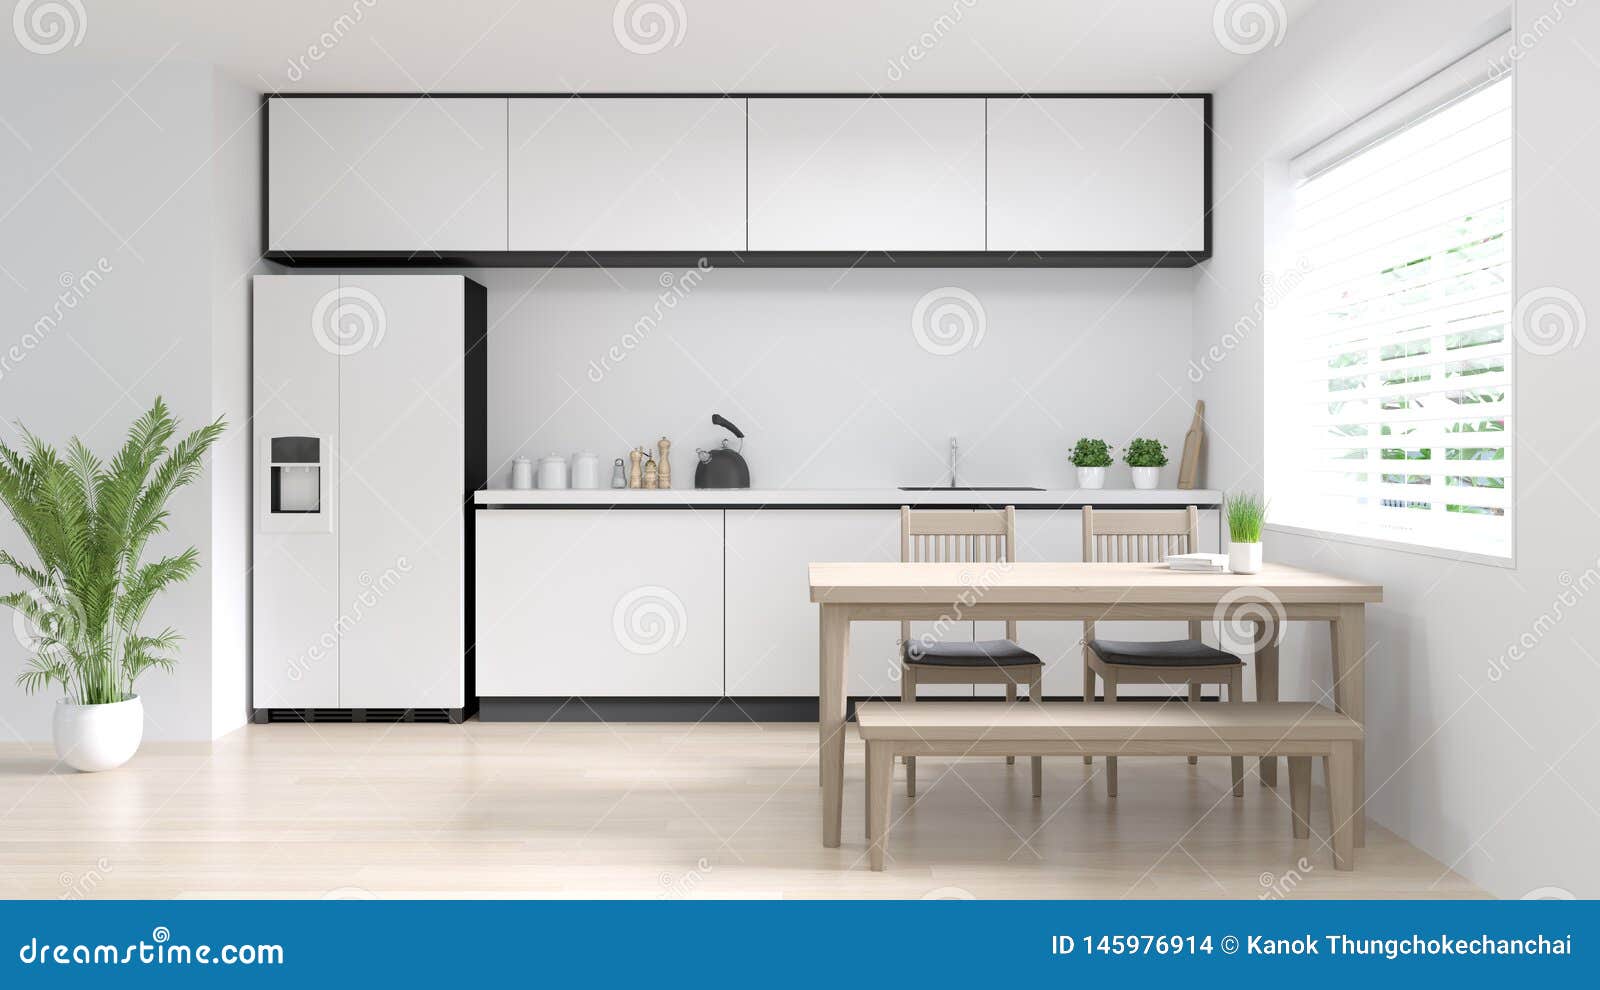 回报拷贝空间的洁净室厨房内部烹调现代食物餐馆3d白色现代设计家庭背景库存例证 插画包括有抽象 建筑